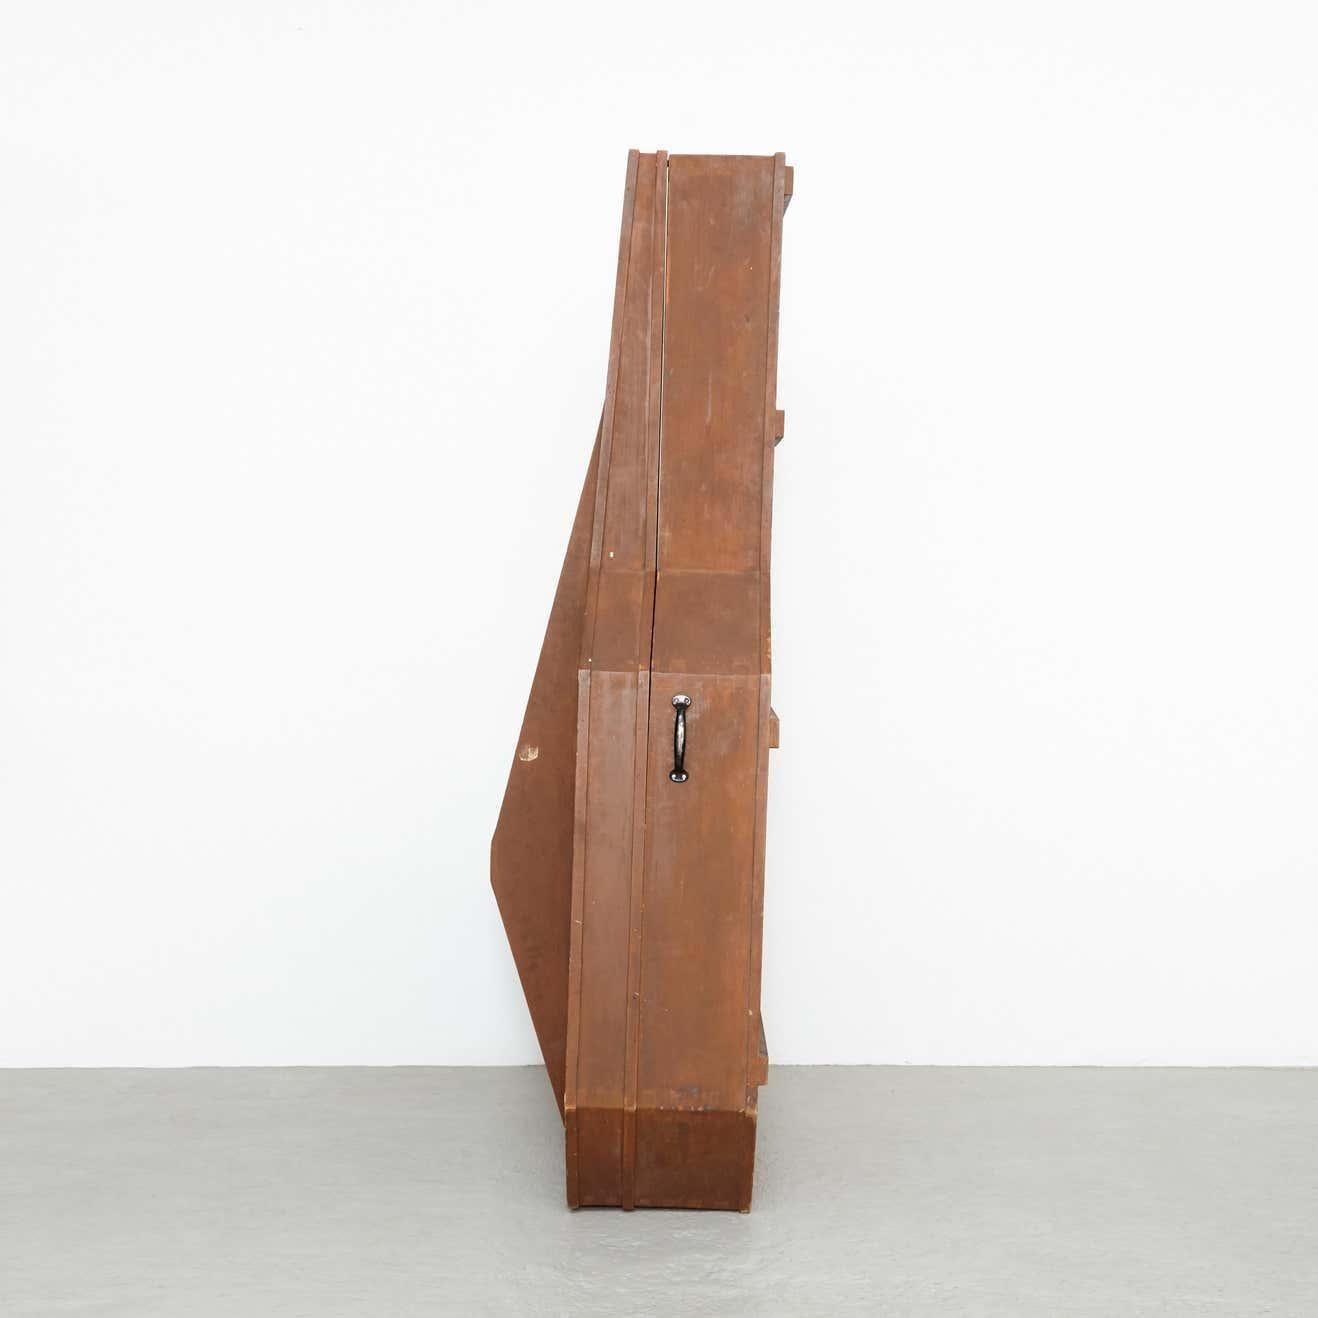 German Sandro's Inri: a Contemporary Minimalist Sculpture and Objét Trouvé, 2017 For Sale